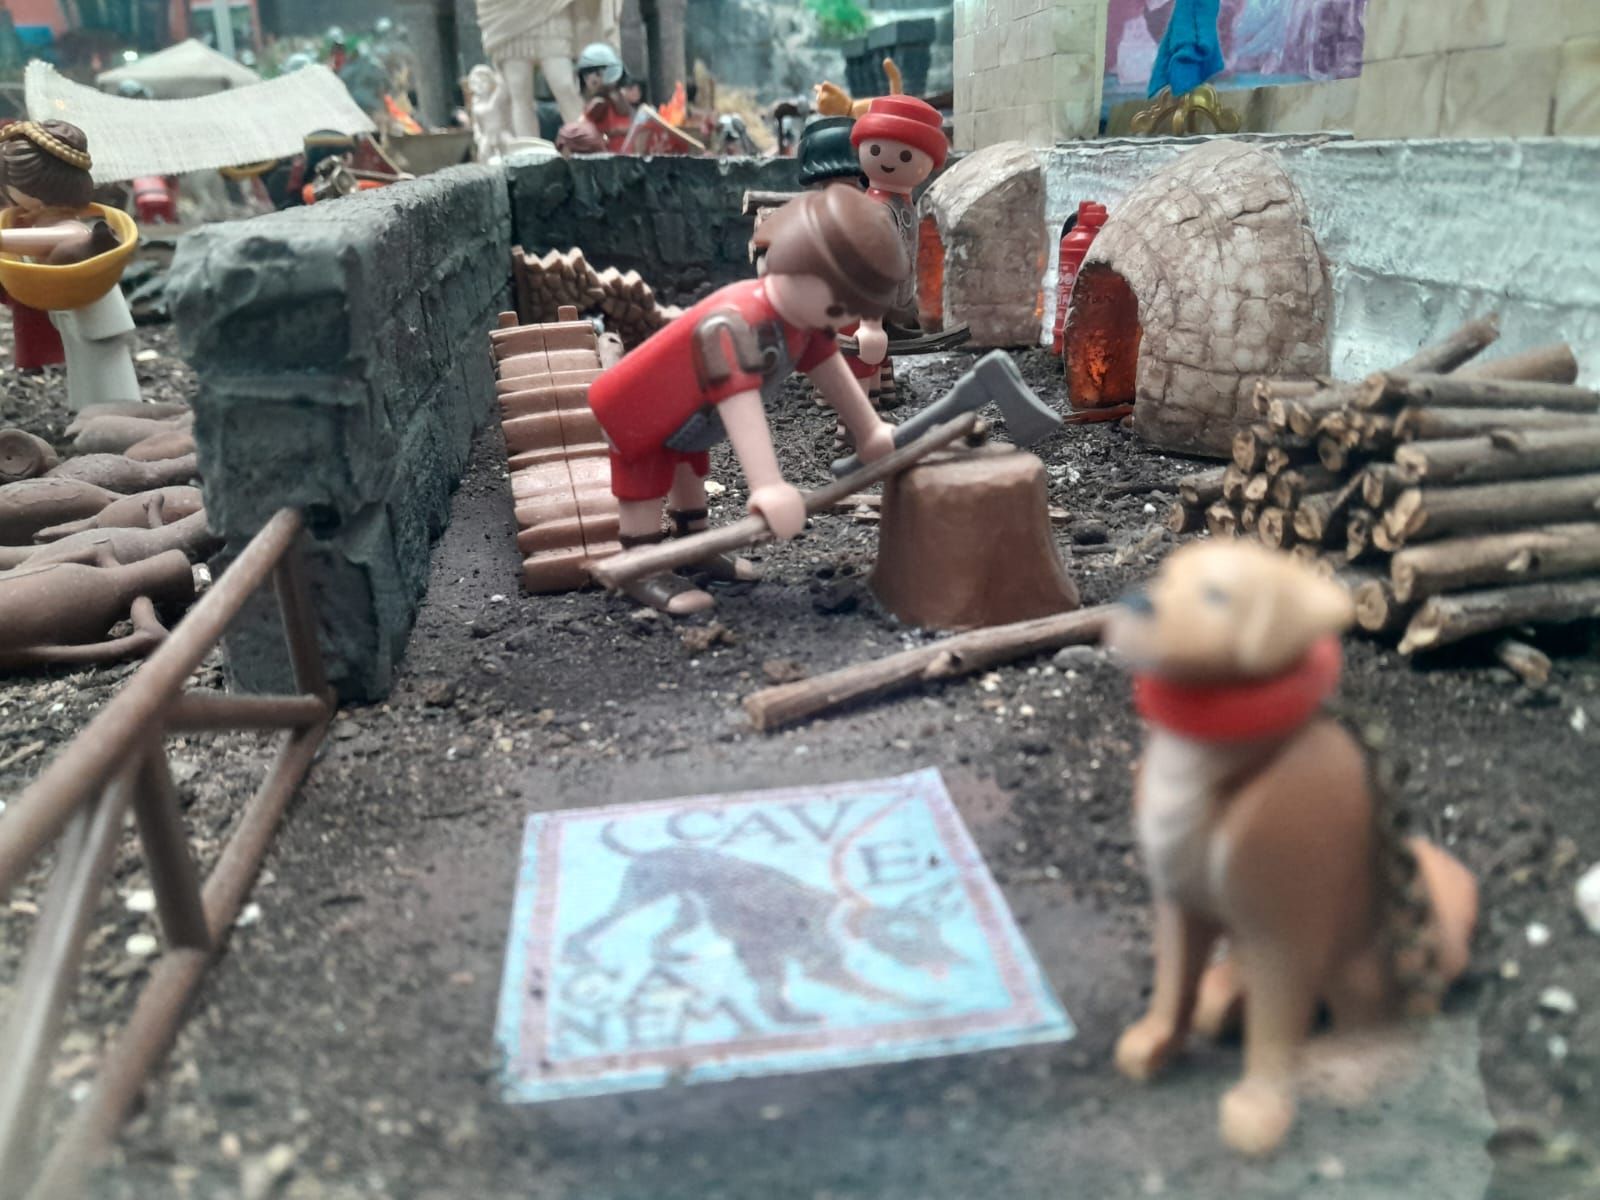 Así es la exposición de Playmobil abierta en El Entrego: un homenaje a la historia de este juguete y también a la de Asturias